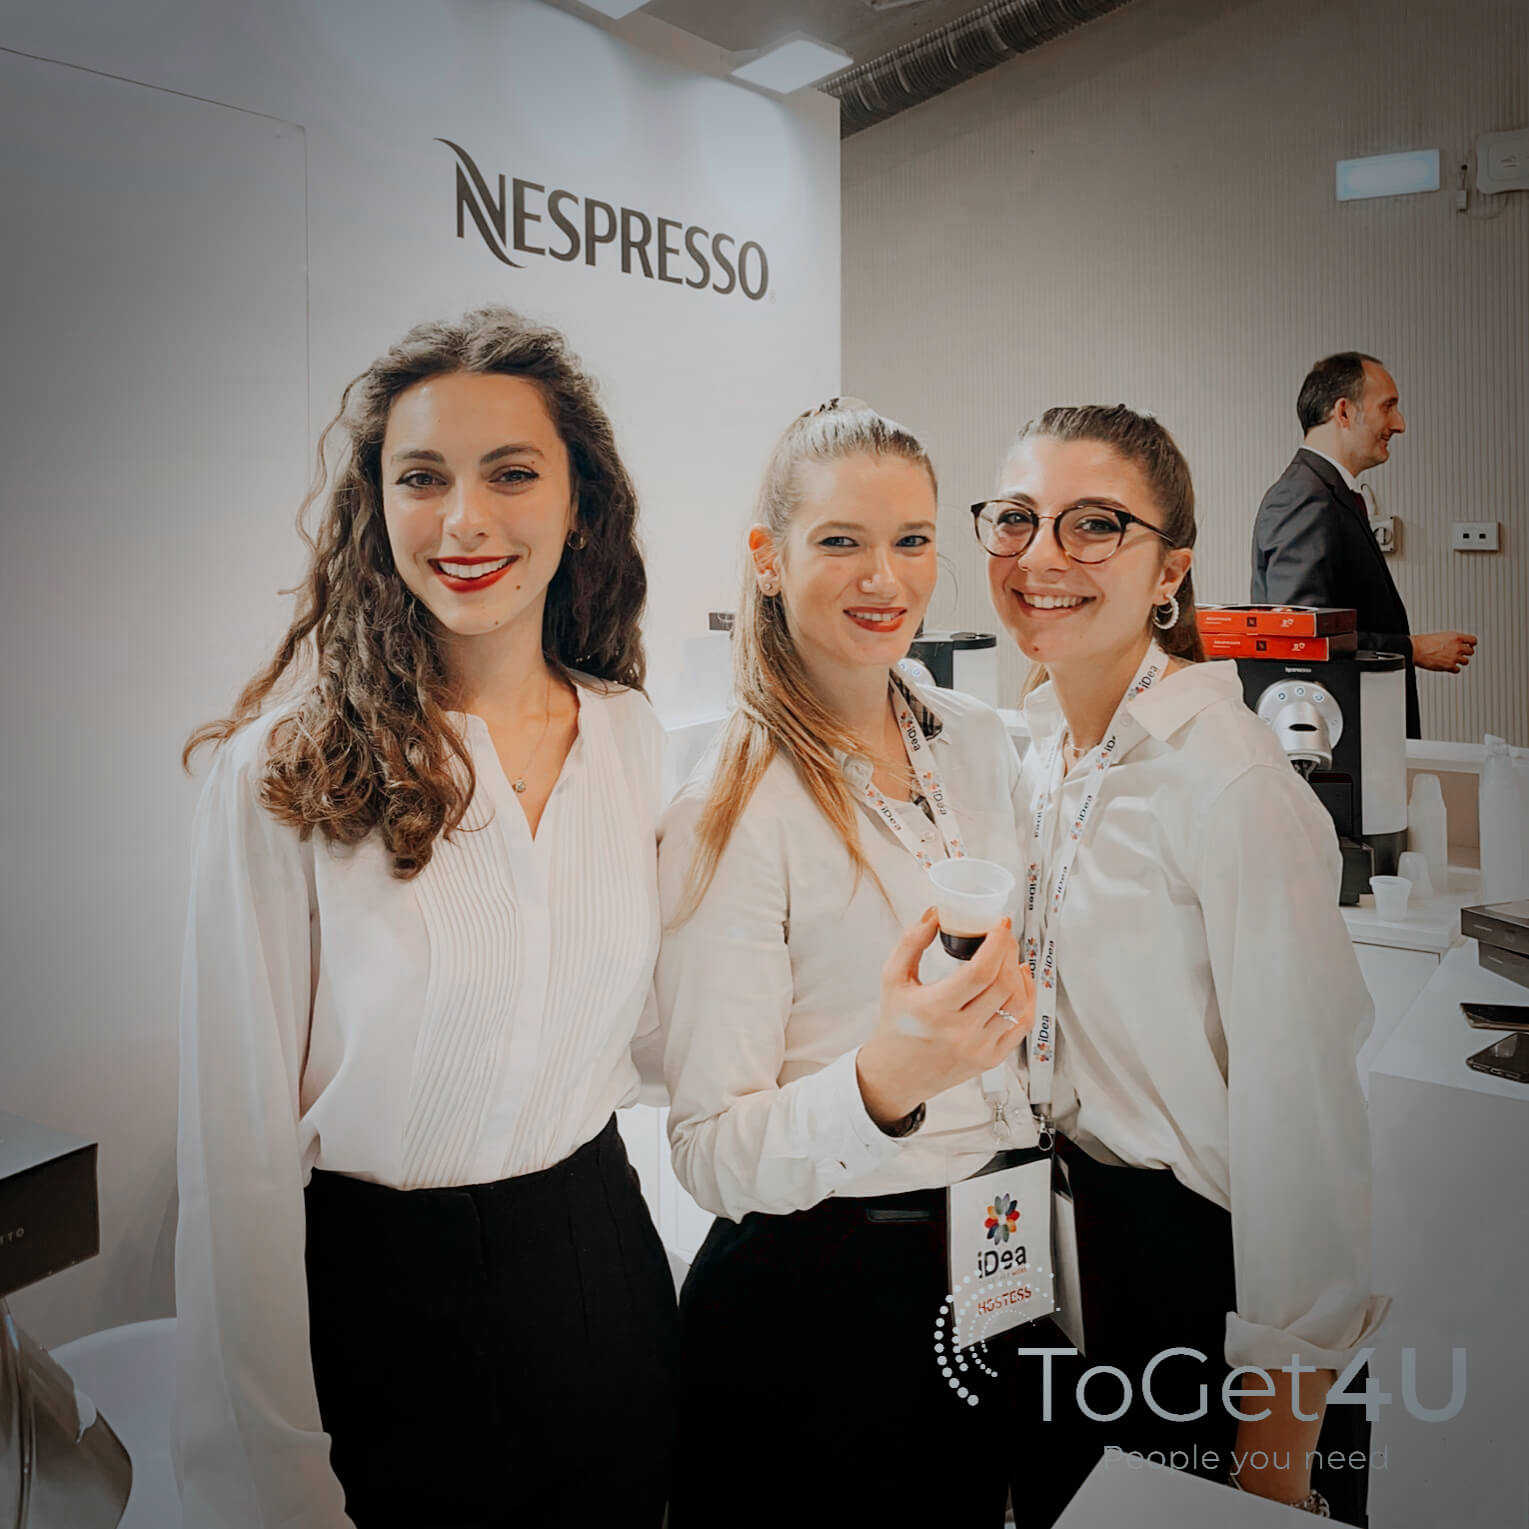 Evento Nespresso - Firenze